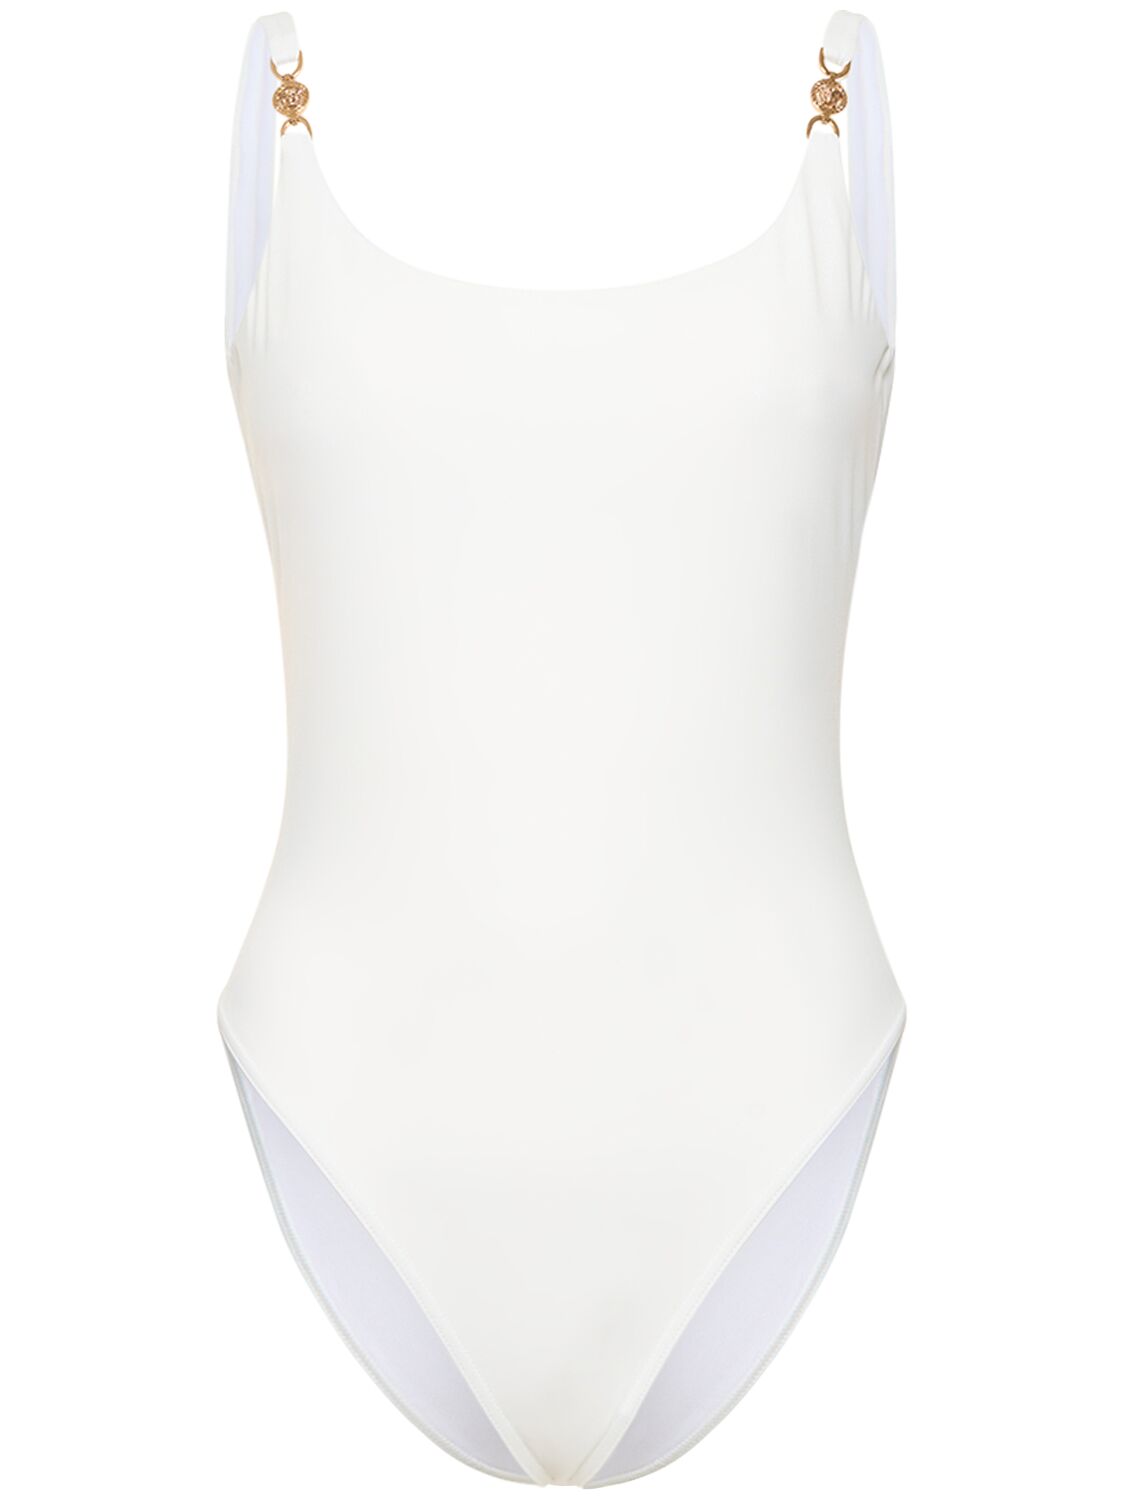 MEDUSA科技织物连体泳衣